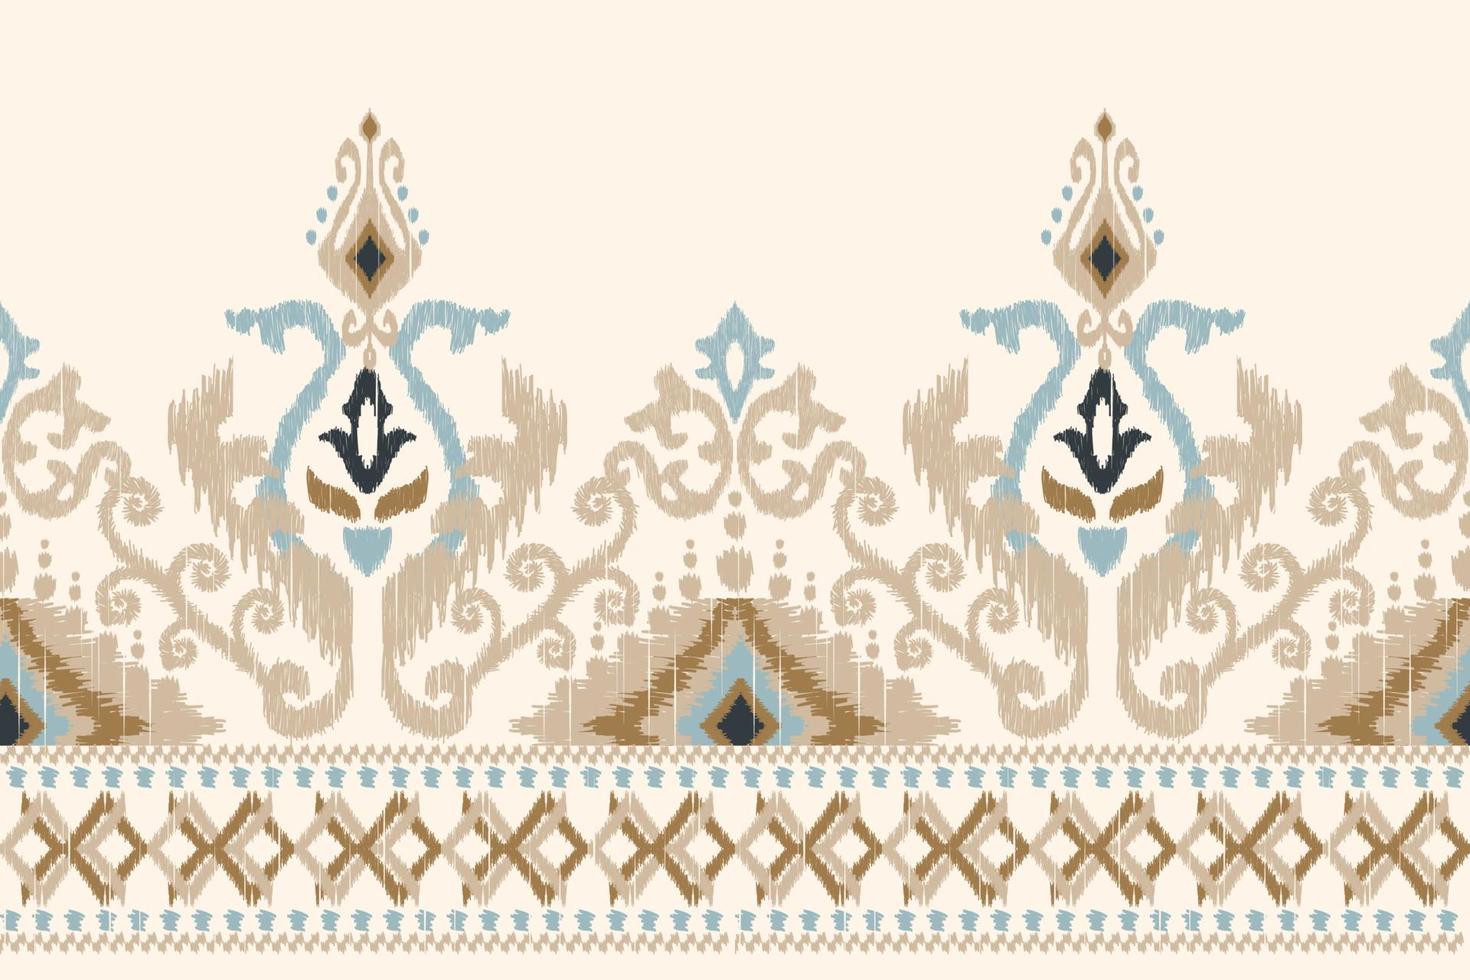 ikat-blumenpaisley-stickerei auf weißem hintergrund.geometrisches ethnisches orientalisches muster traditionell.aztekische stilabstrakte vektorillustration.design für textur,stoff,kleidung,verpackung,dekoration,sarong vektor